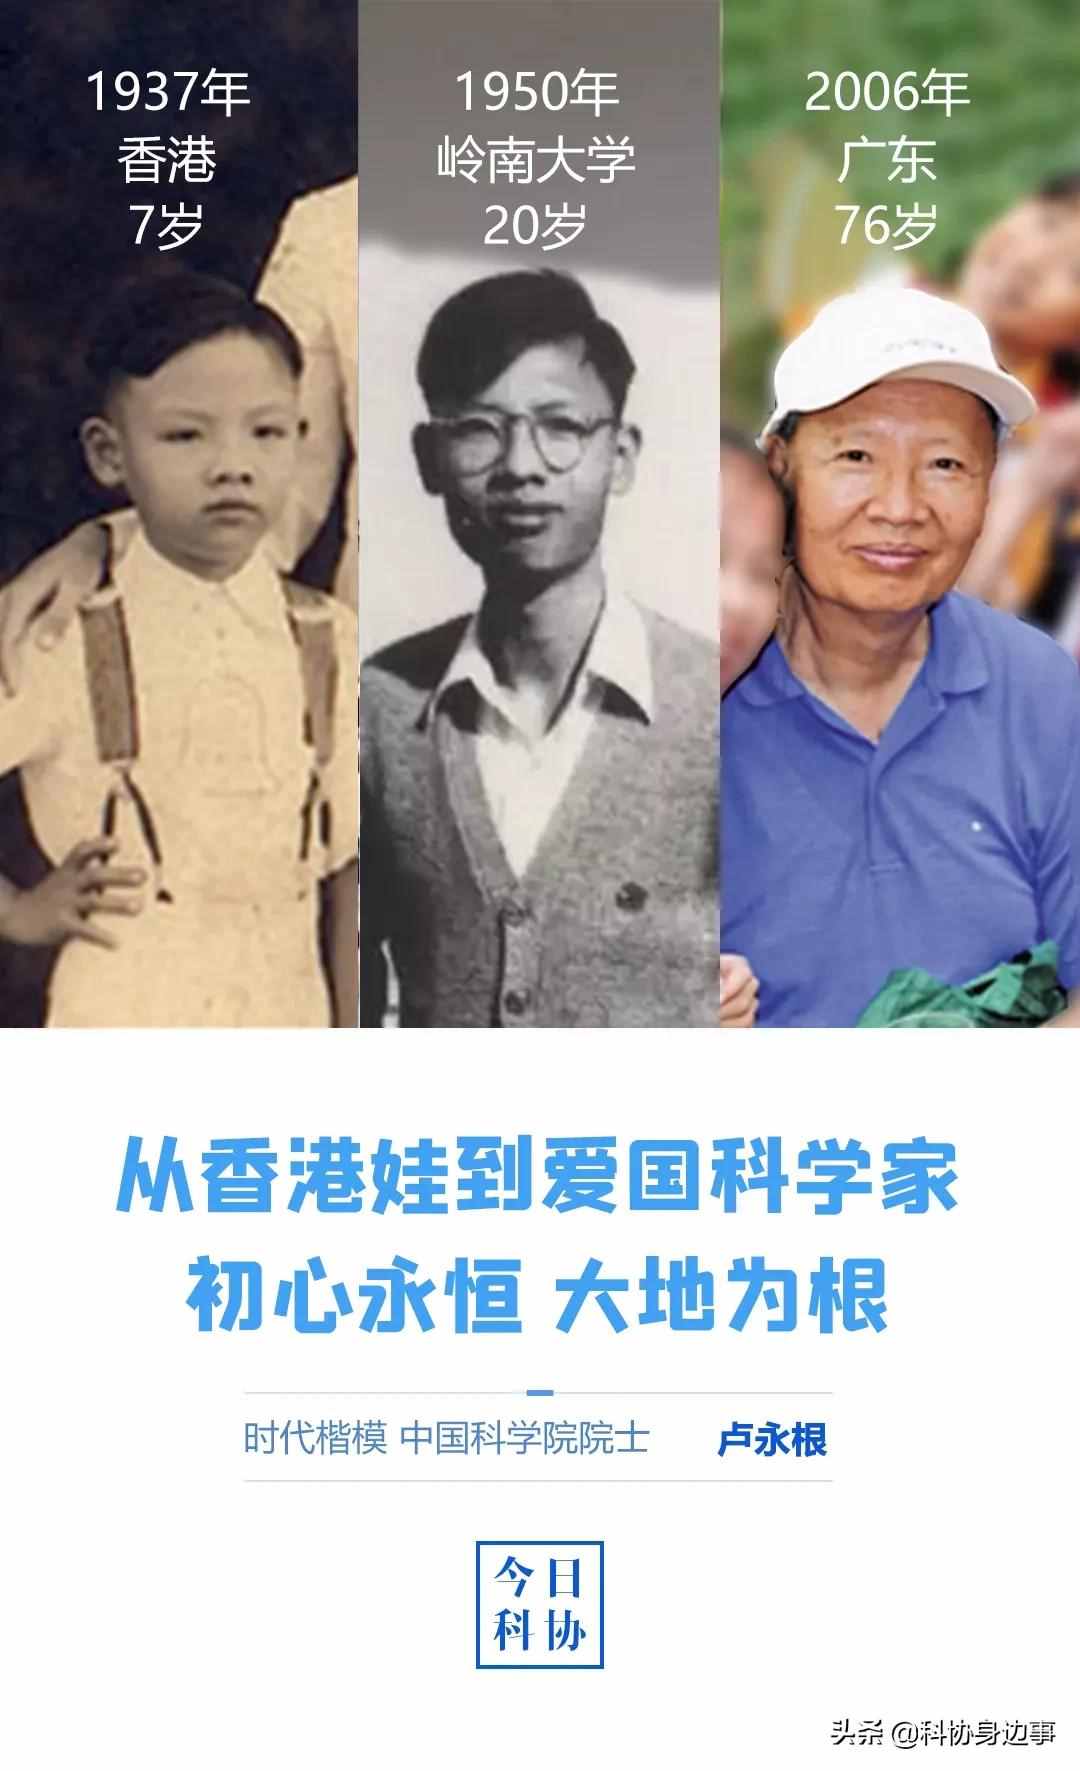 科学家故事丨卢永根：从香港娃到爱国科学家 初心永恒 大地为根